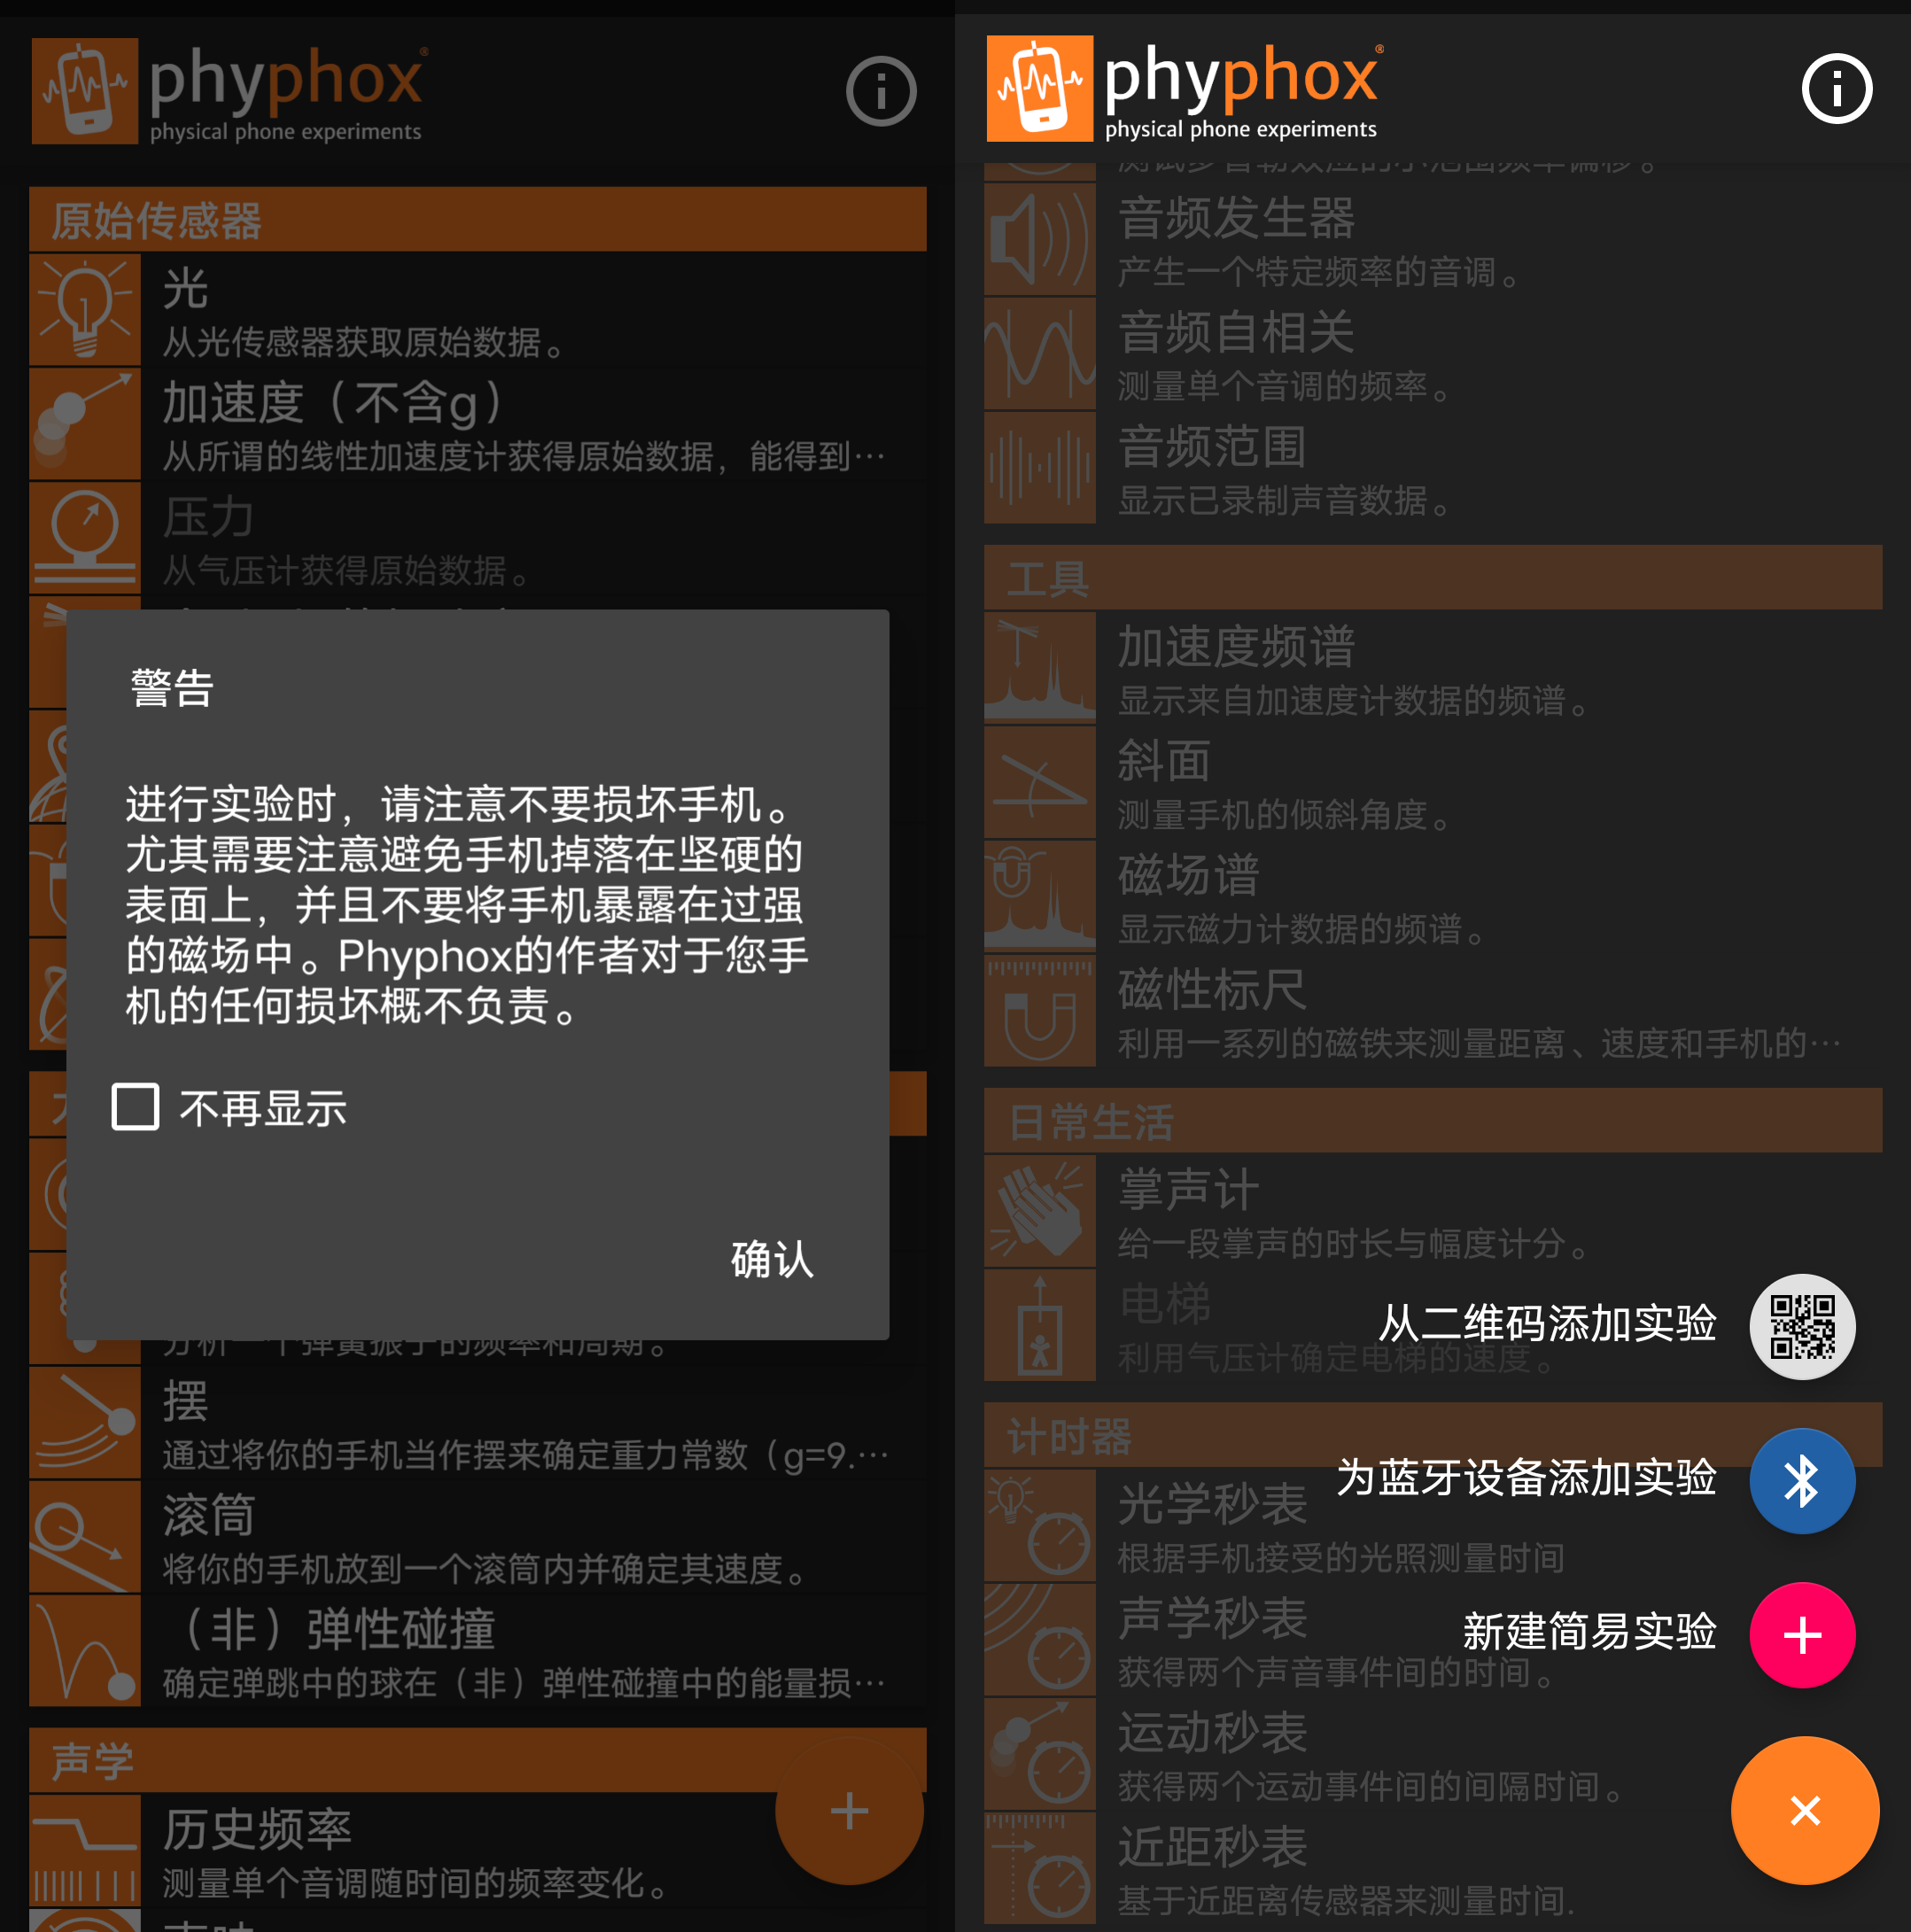 Android phyphox物理工坊_v1.1.10